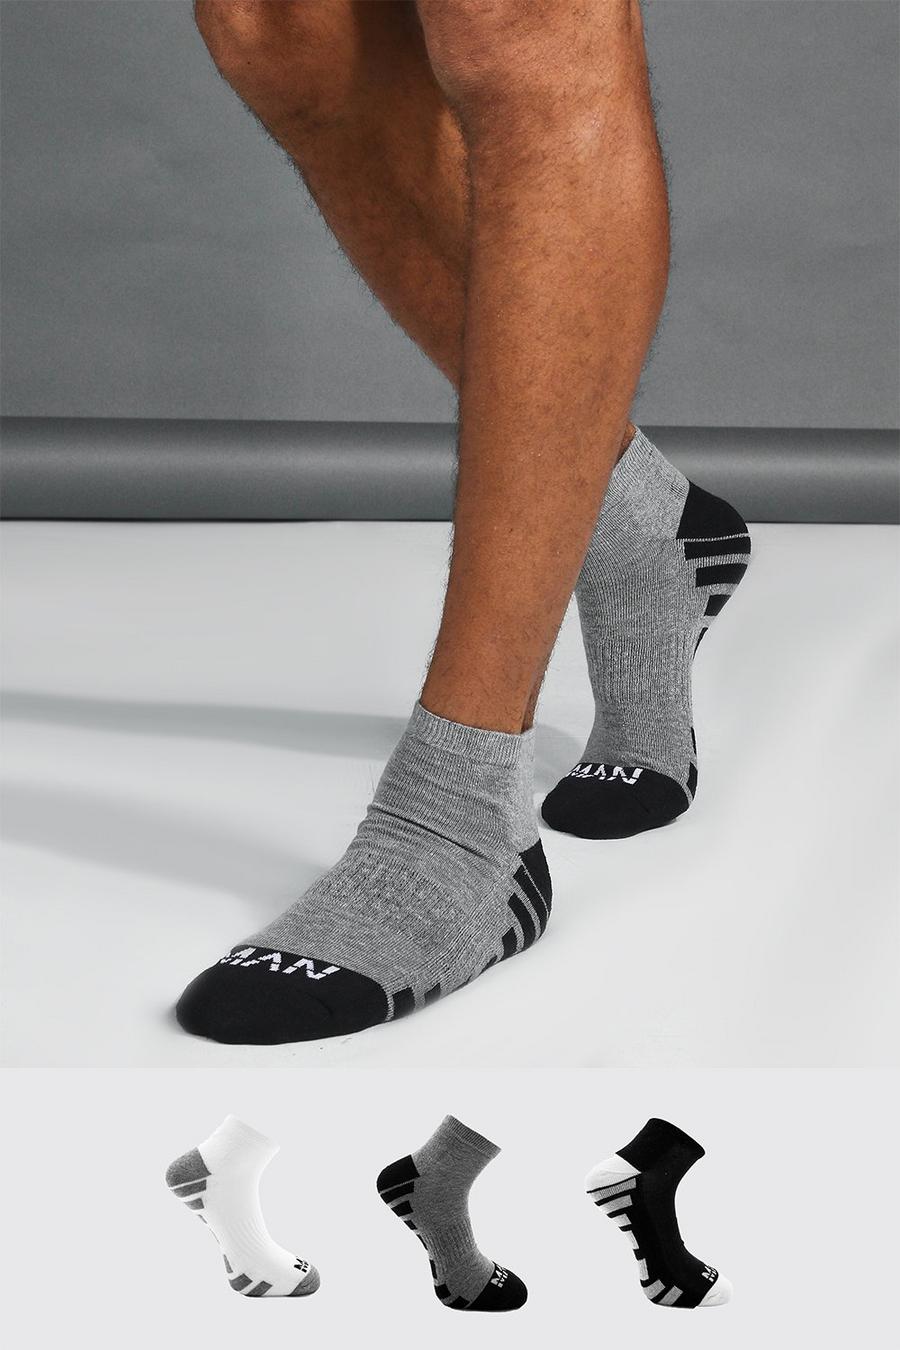 Calzini alla caviglia Man Dash Activewear - set di 3 paia, Multi multicolor